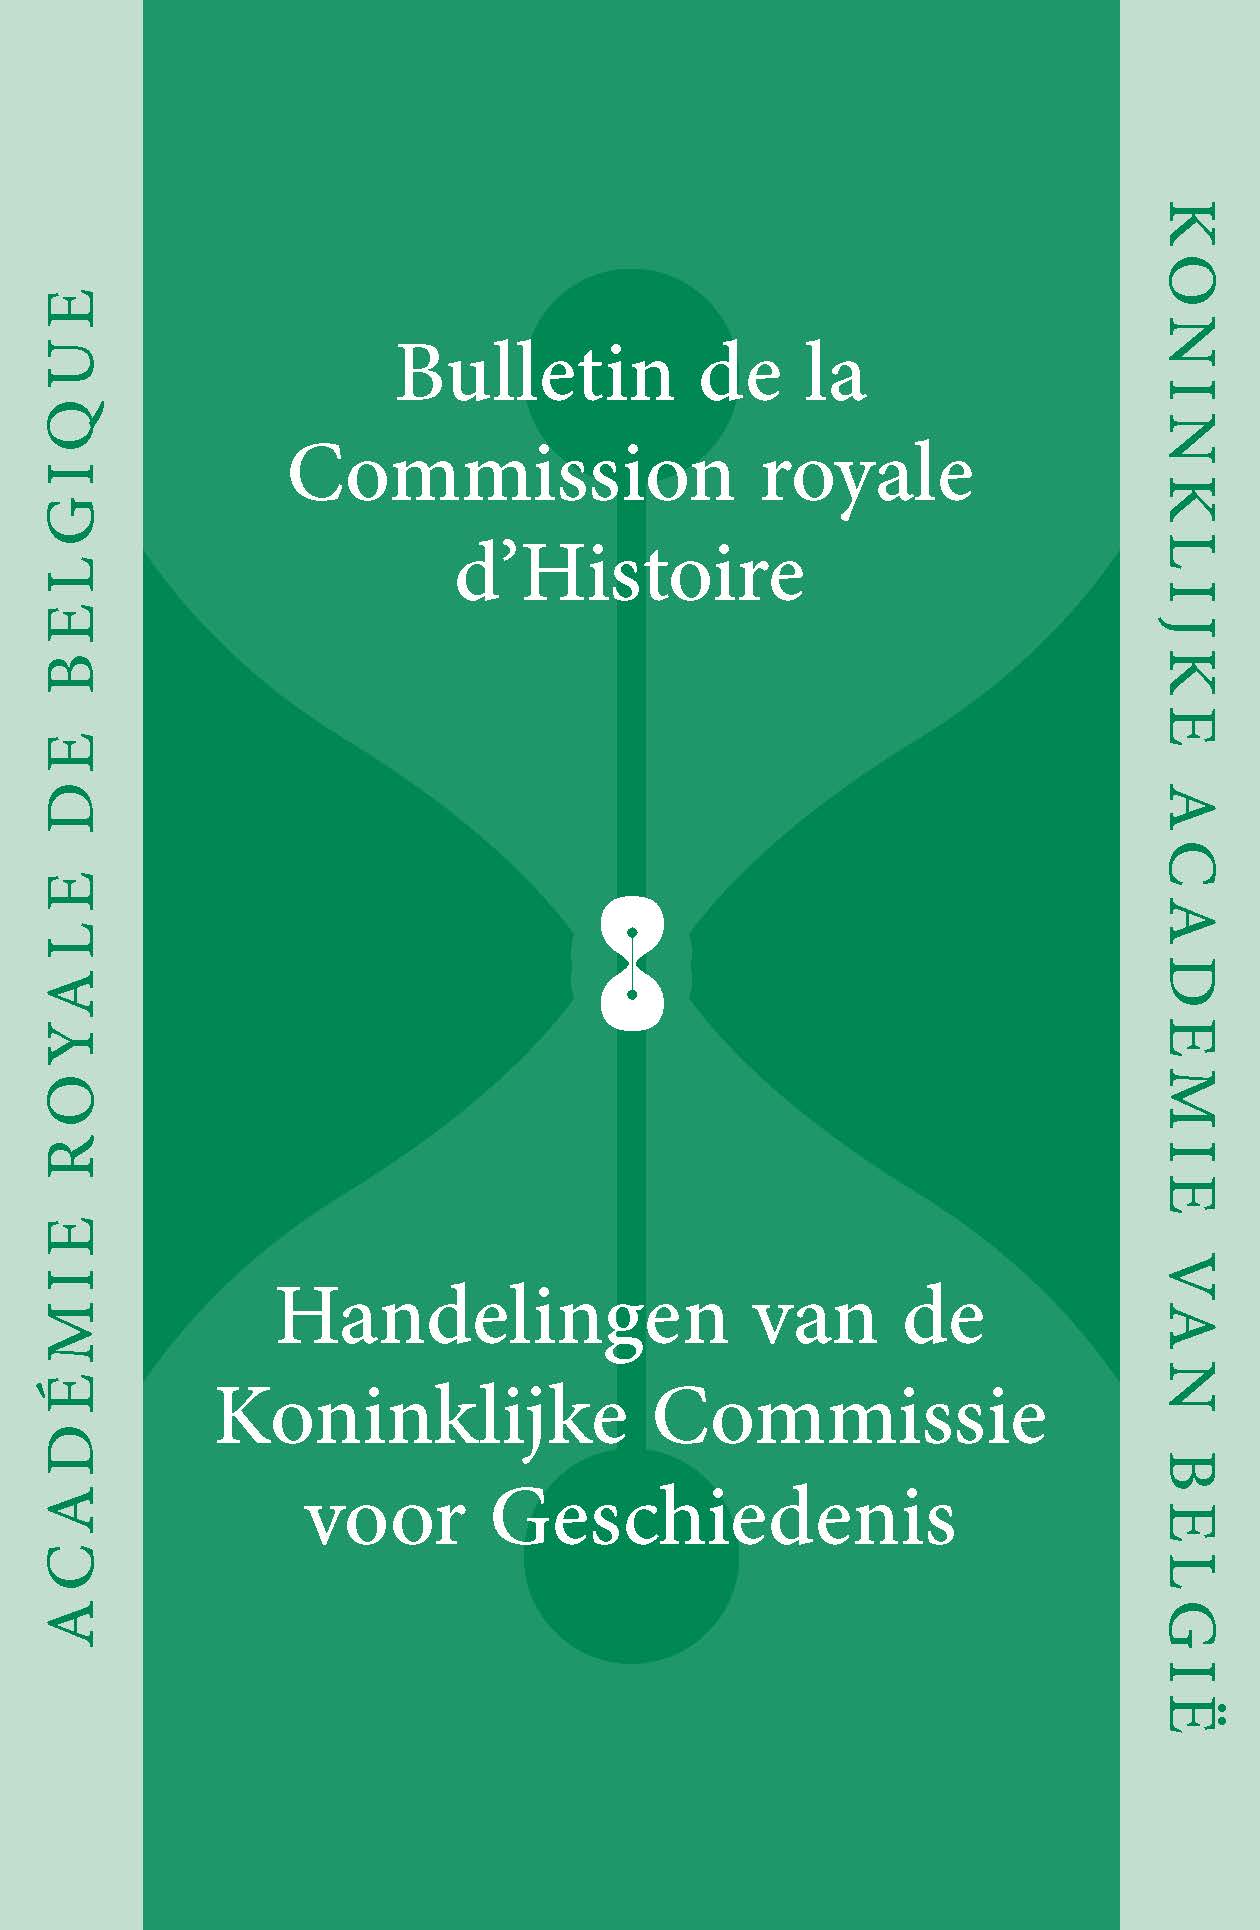 HANDELINGEN VAN DE KONINKLIJKE COMMISSIE VOOR GESCHIEDENIS/BULLETIN, vol. 179, 2013 (kcg)